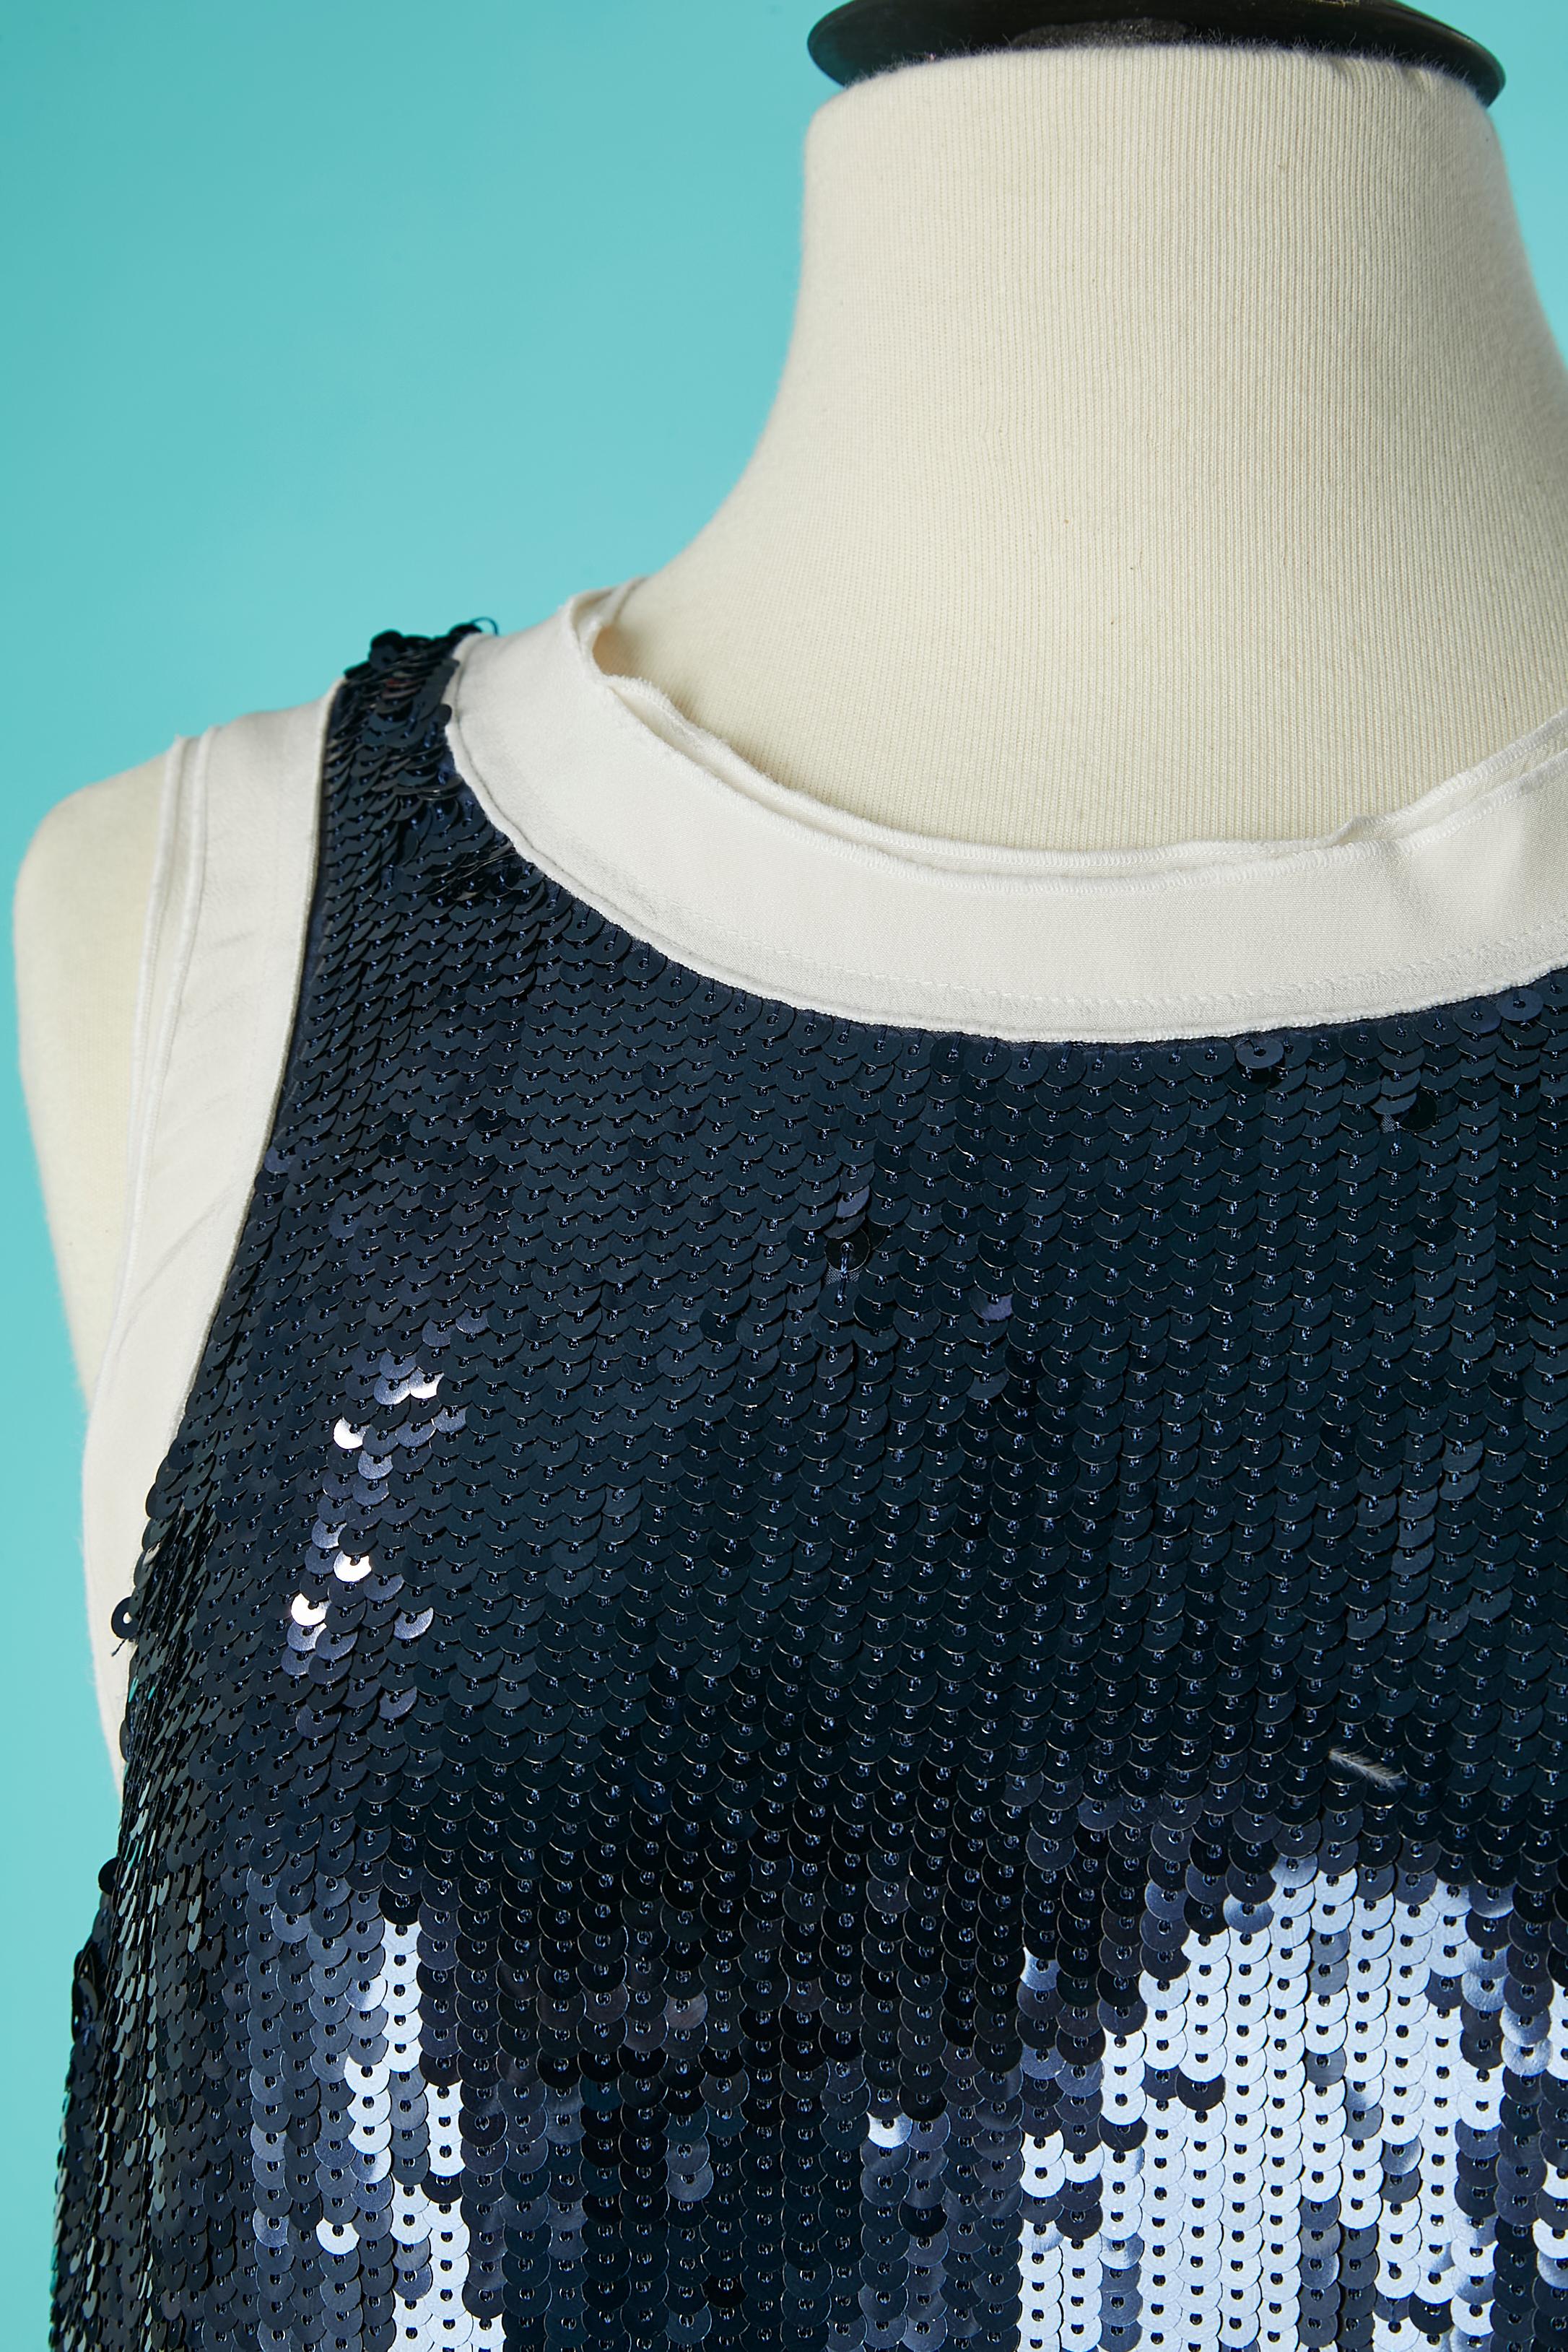 Mini robe en paillettes bleues avec motif Anchor et bord inférieur plissé. Composée de 2 superpositions de couches (celle du dessus en paillettes et celle du dessous en soie, terminée par une soie plissée).
Fermeture à bouton-pression en haut au